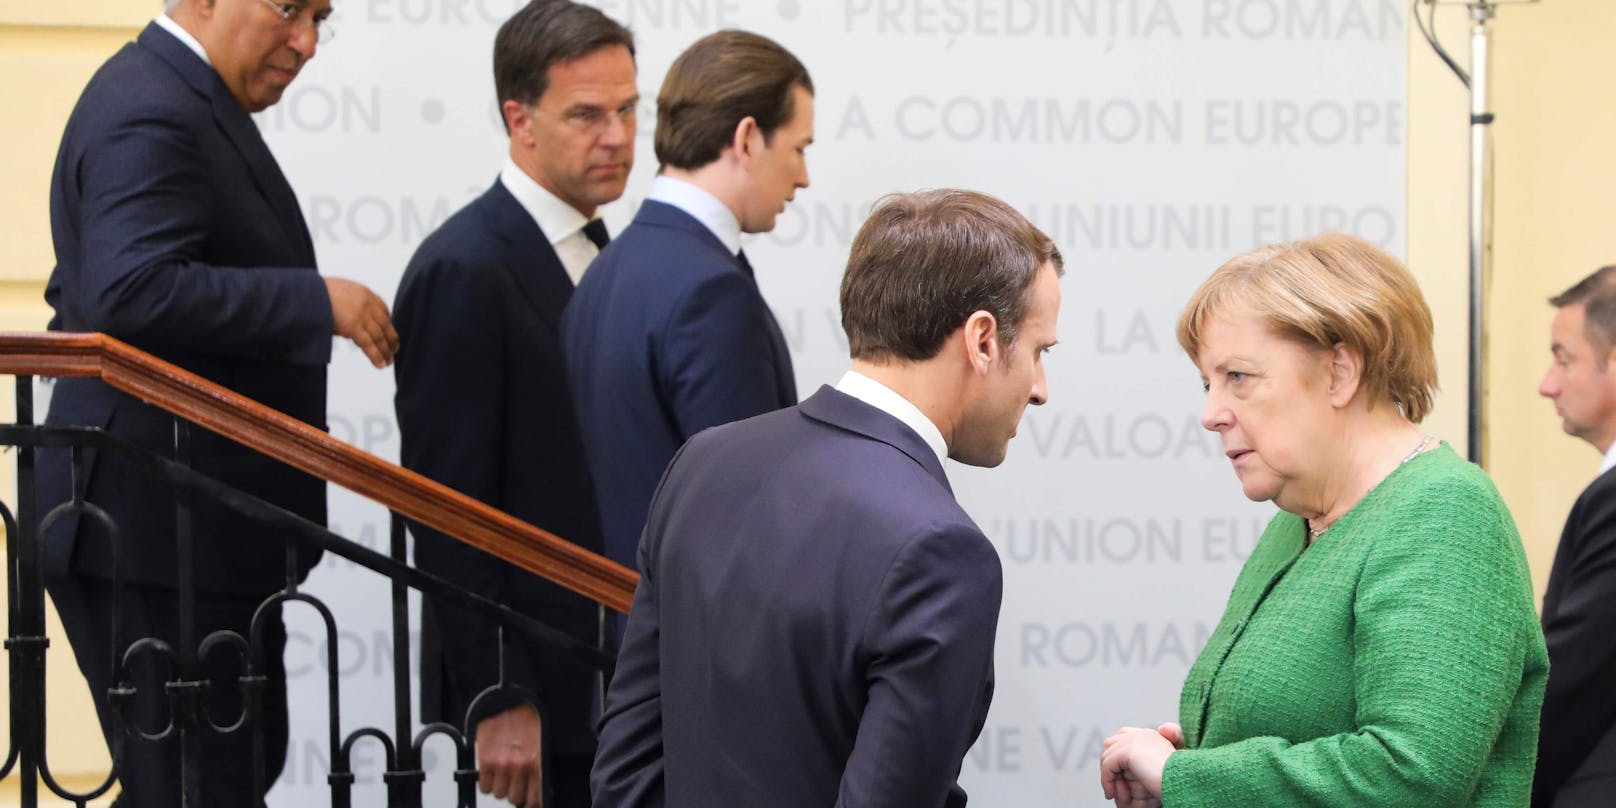 Bundeskanzler Sebastian Kurz (3.v.l.) bei einem EU-Gipfel. Im Vordergrund Emmanuel Macron und Angela Merkel.